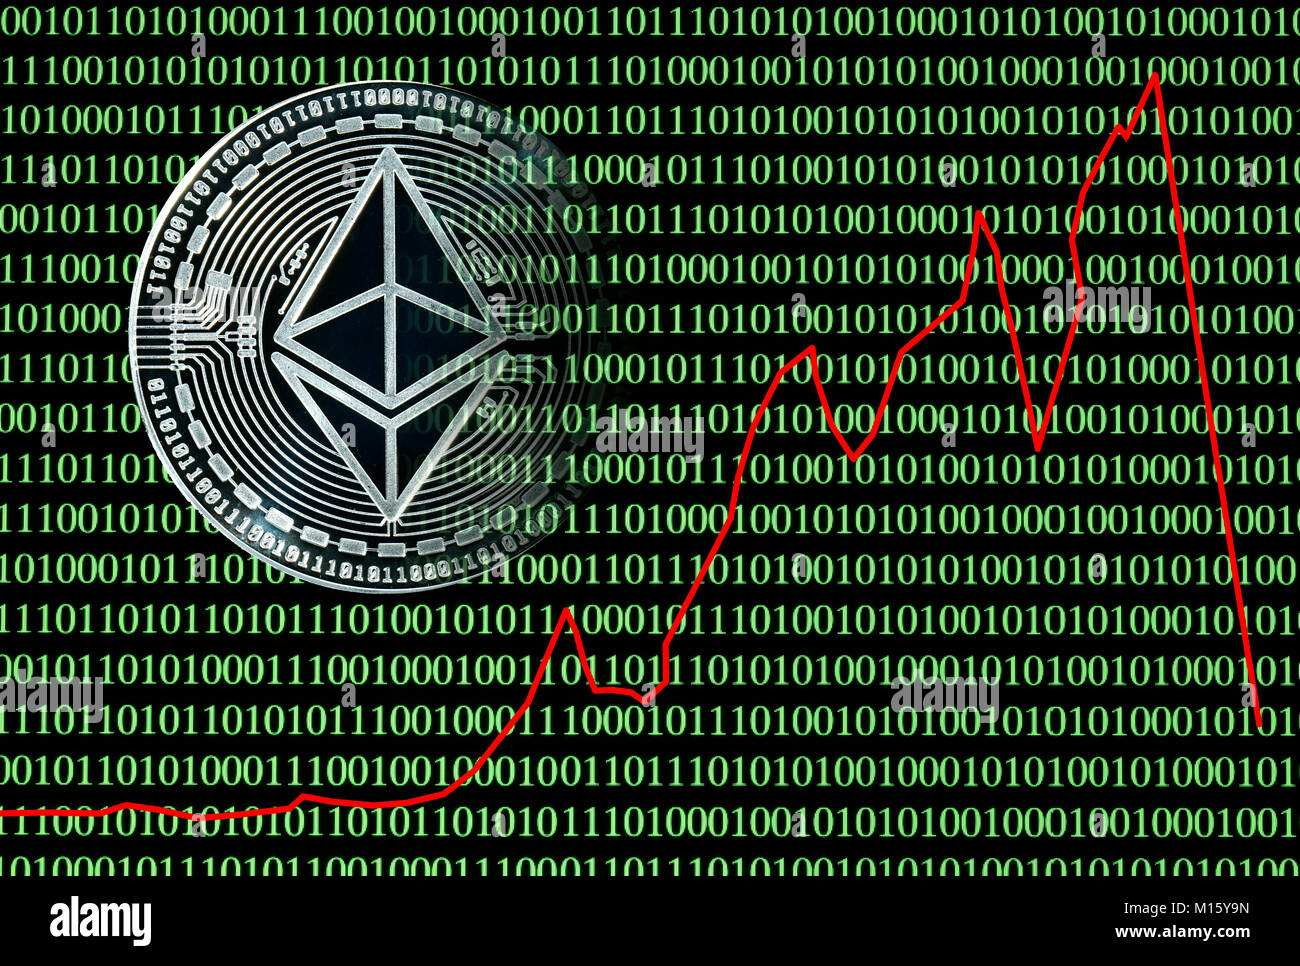 Immagine simbolo Cryptocurrency,valuta digitale,moneta d'argento Ethereum nella parte anteriore del digitale codice binario con prezzo di stock Foto Stock